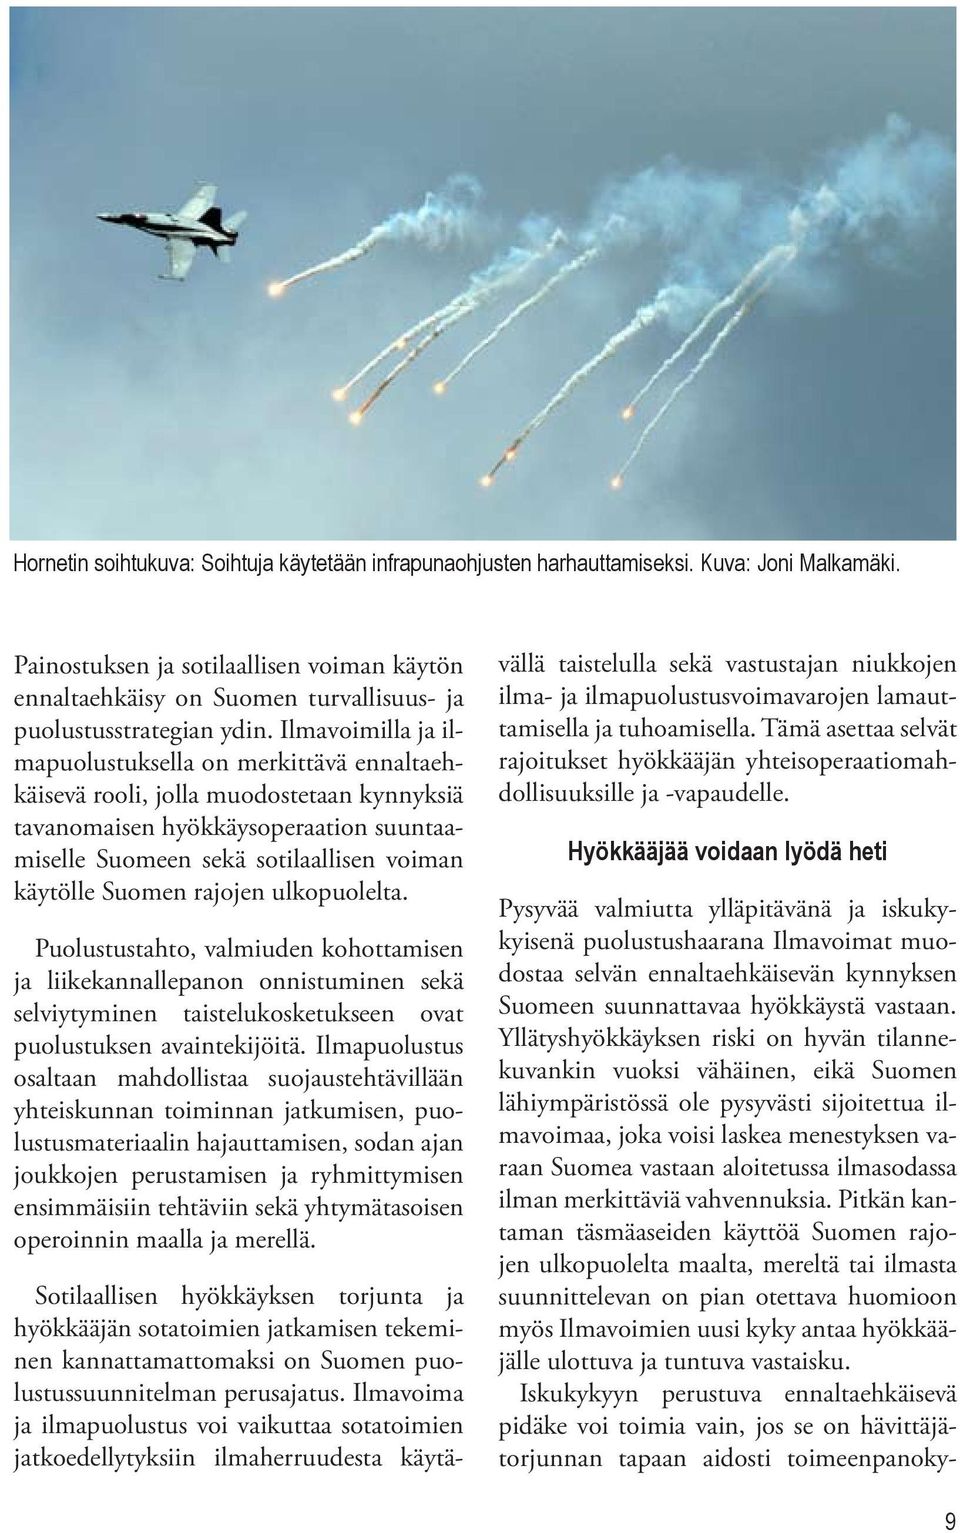 Ilmavoimilla ja ilmapuolustuksella on merkittävä ennaltaehkäisevä rooli, jolla muodostetaan kynnyksiä tavanomaisen hyökkäysoperaation suuntaamiselle Suomeen sekä sotilaallisen voiman käytölle Suomen